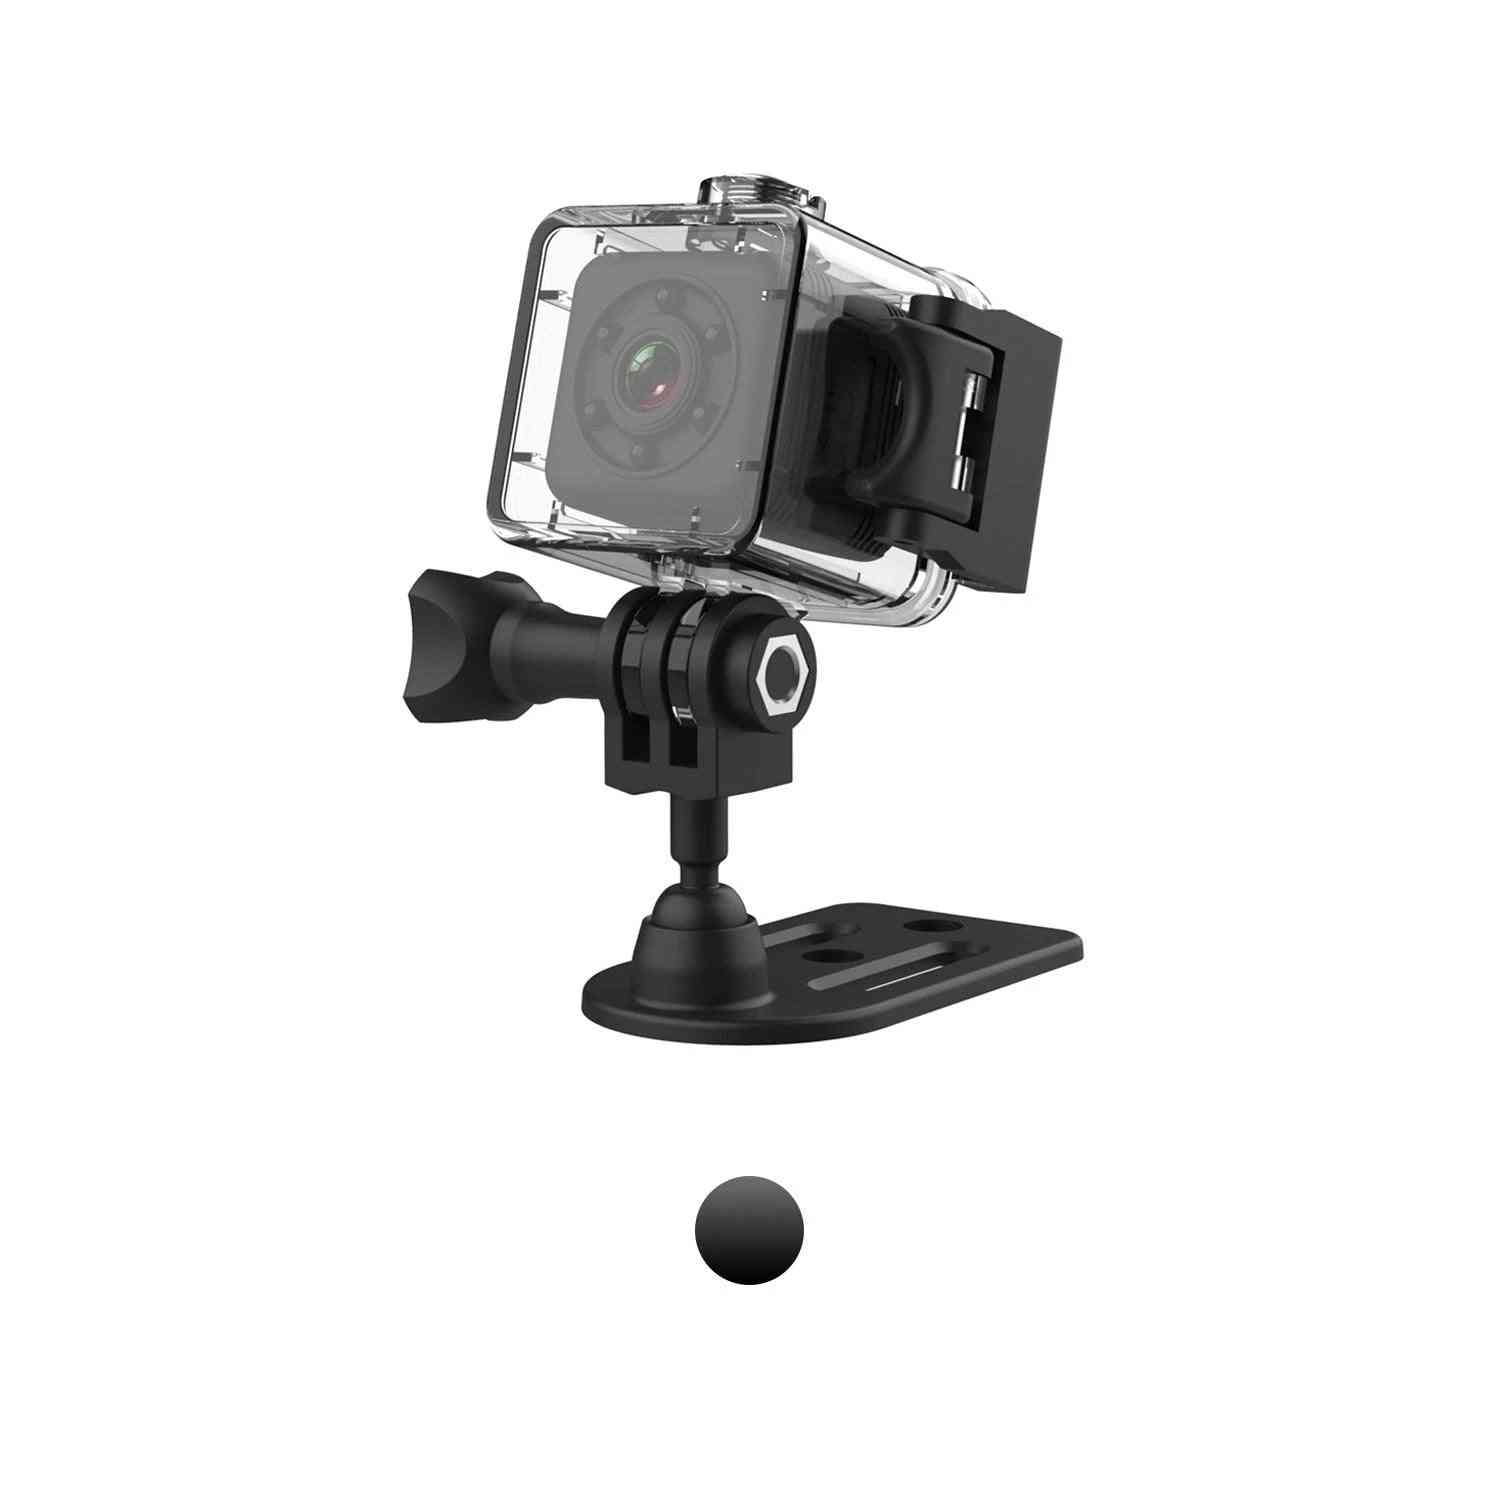 Mini telecamera ip sport sq29 per visione notturna, movimento videocamera impermeabile, micro telecamera dvr sport - sq11 nero